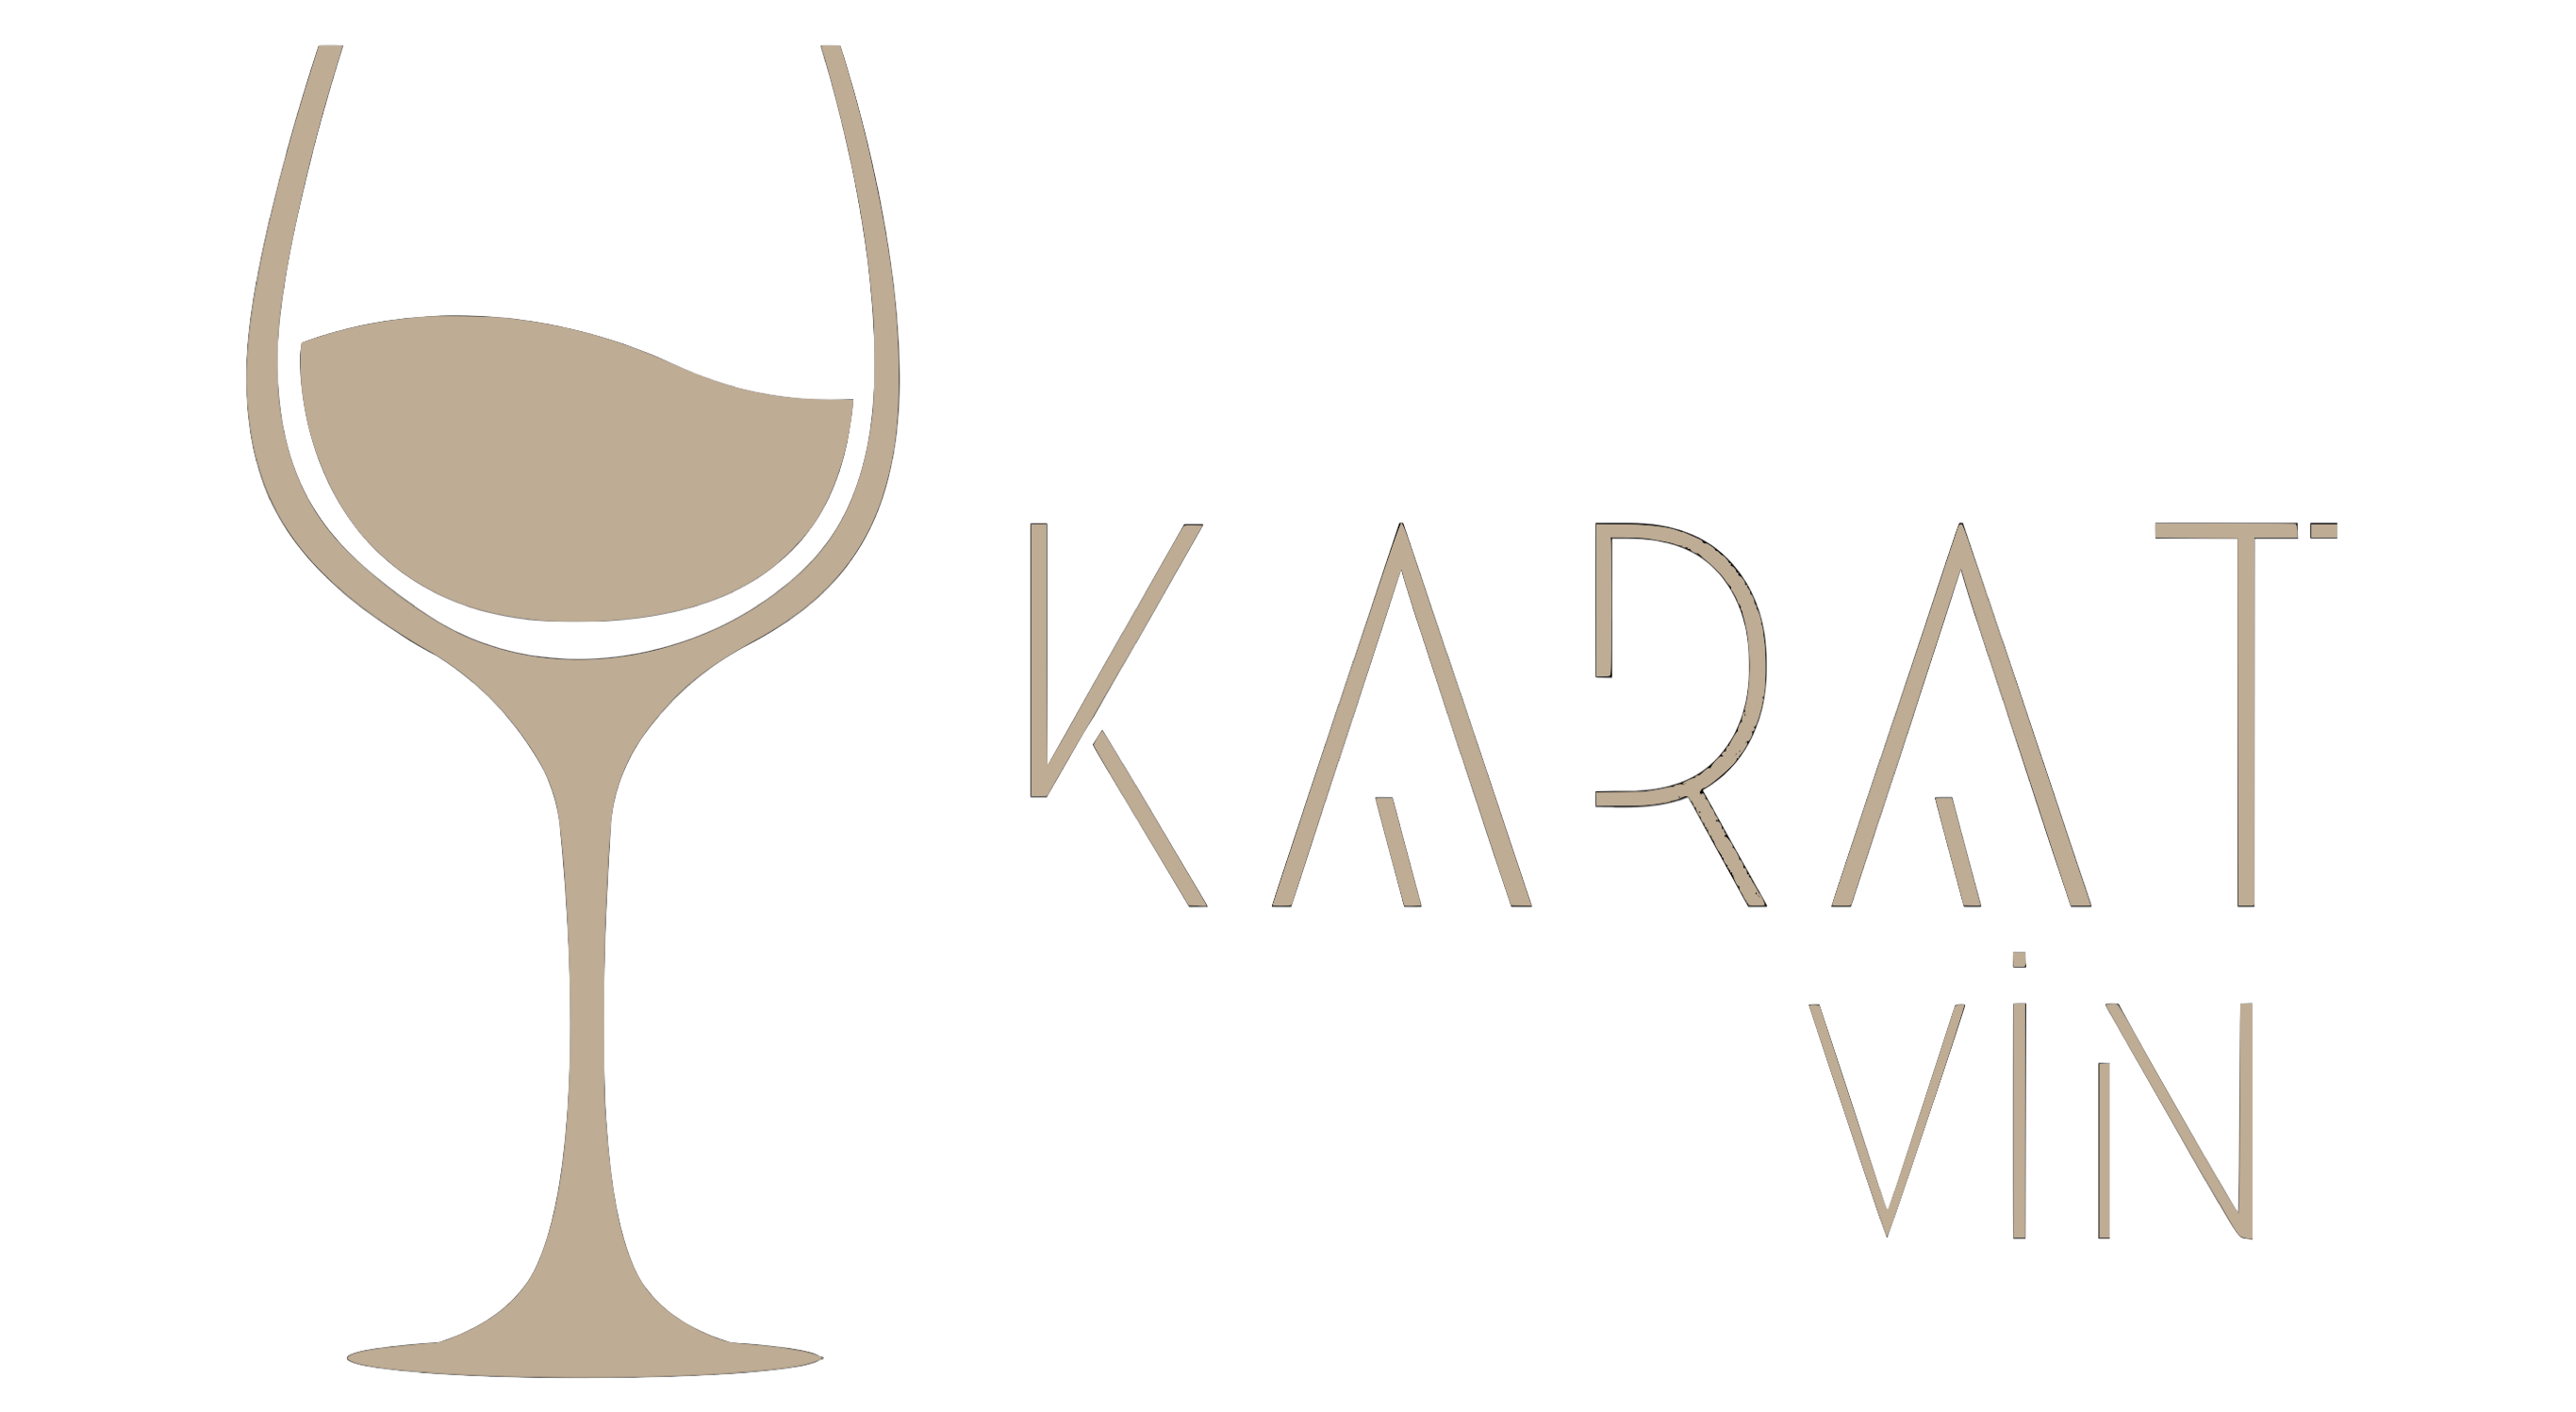 Karat vin logo